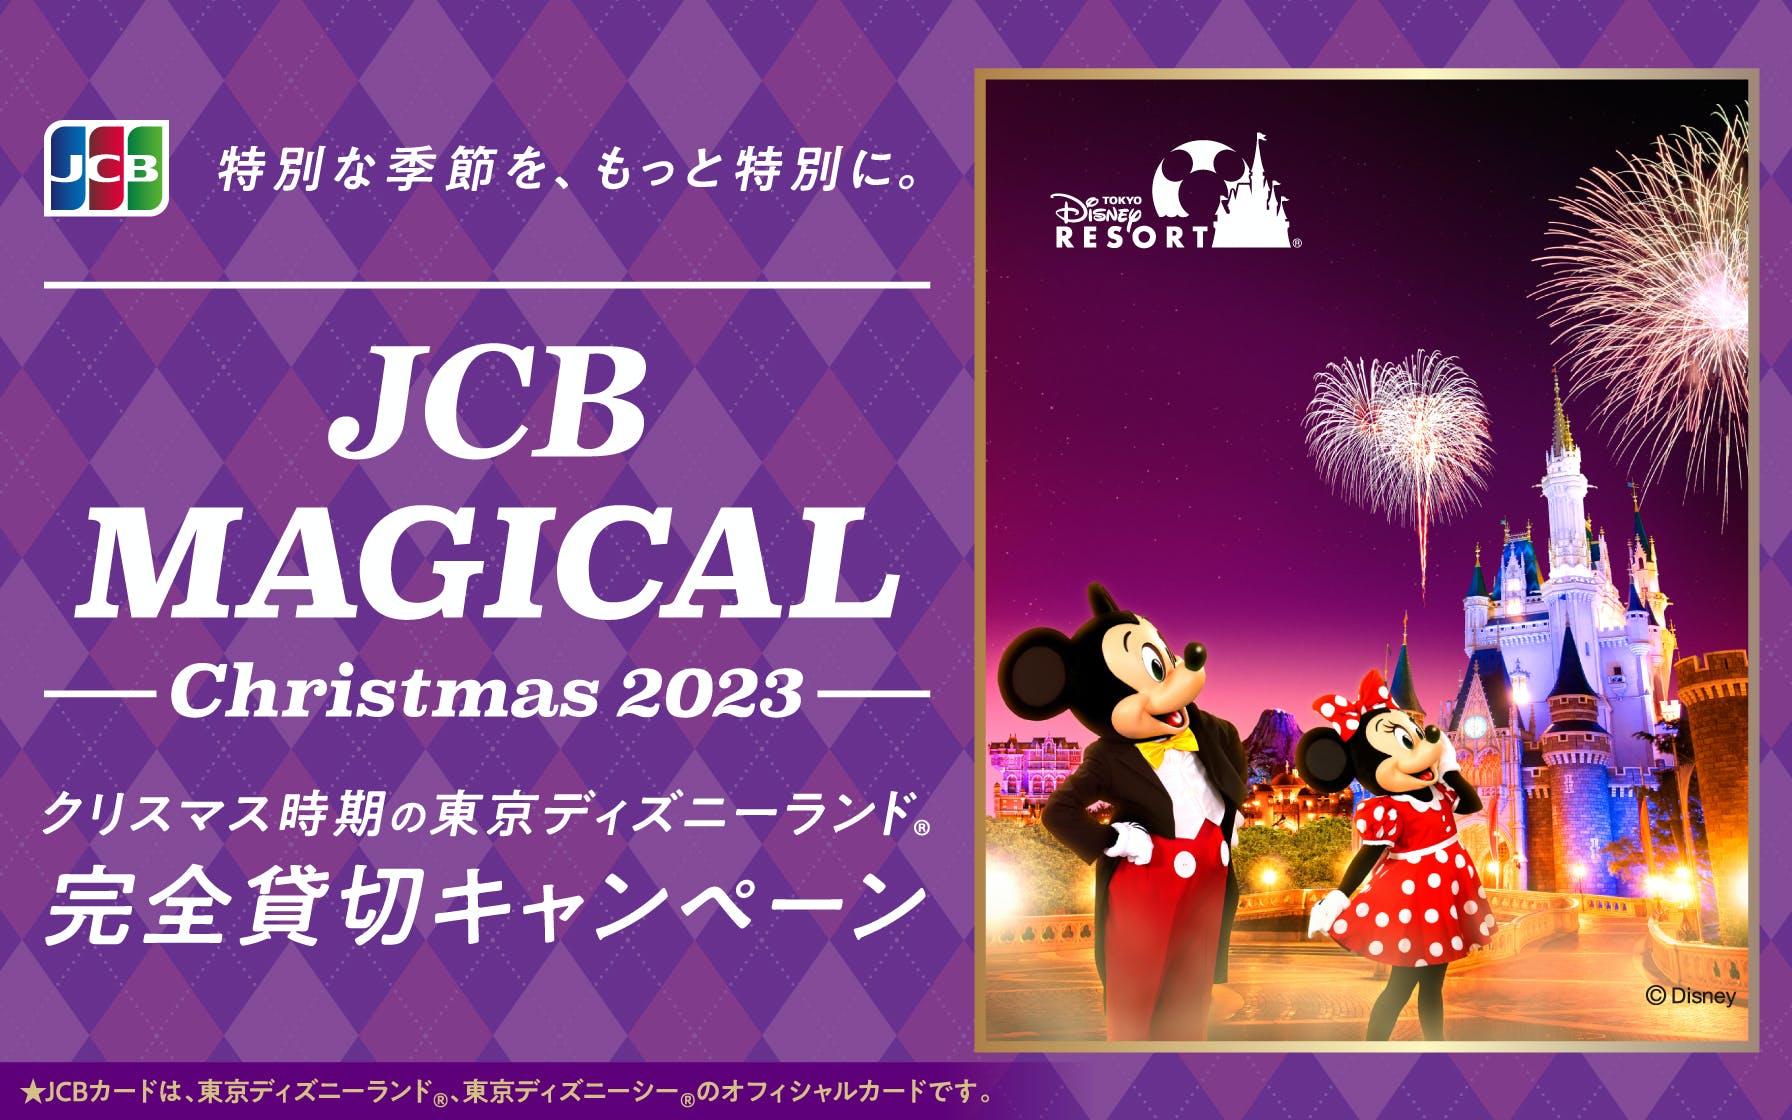 【JCB会員様限定】JCB マジカル クリスマス 2023 クリスマス時期の東京ディズニーランド(R)完全貸切キャンペーン